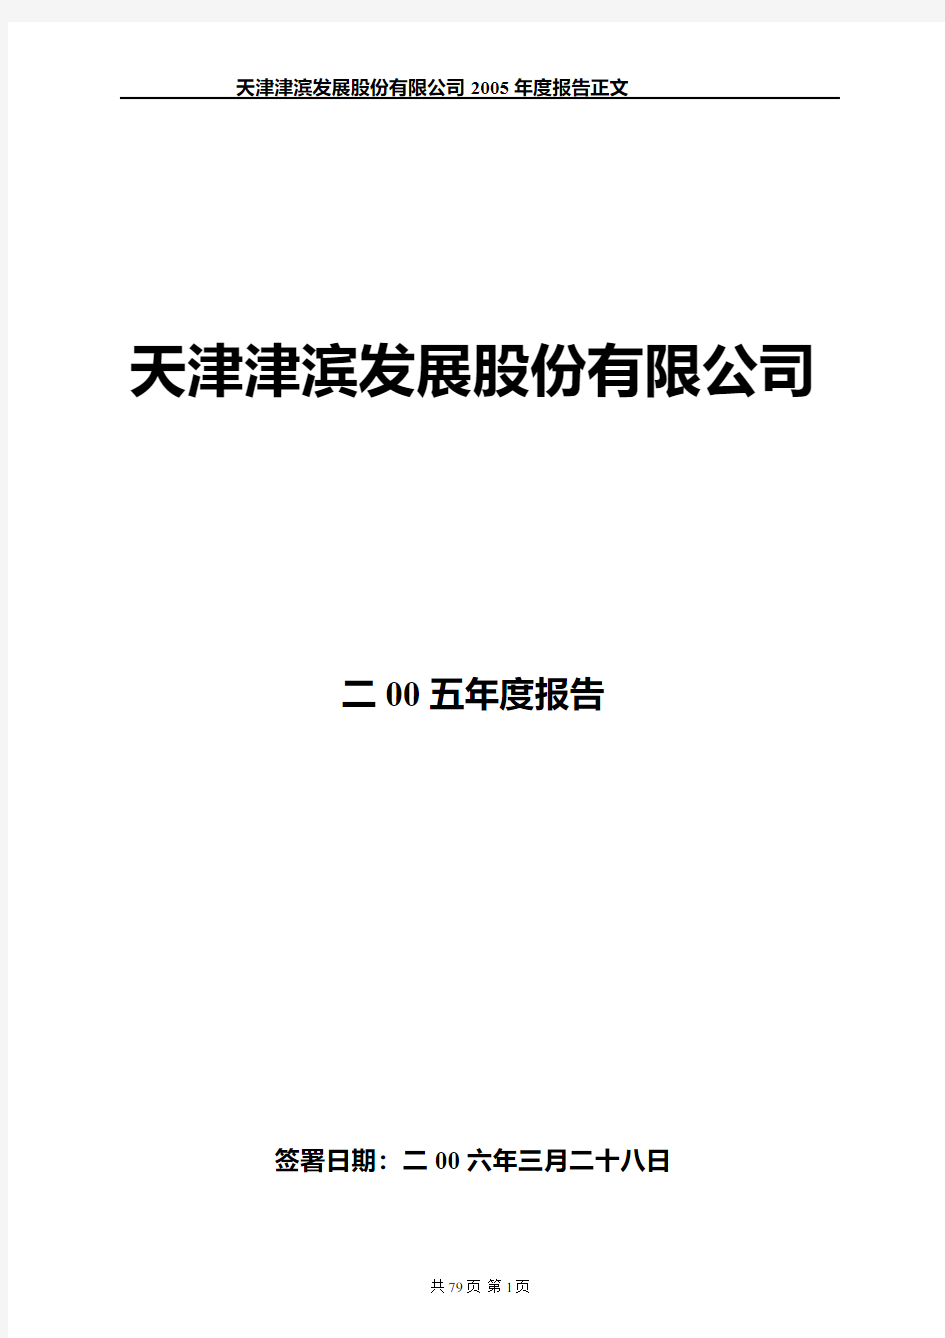 天津津滨发展股份有限公司2005年度报告正文